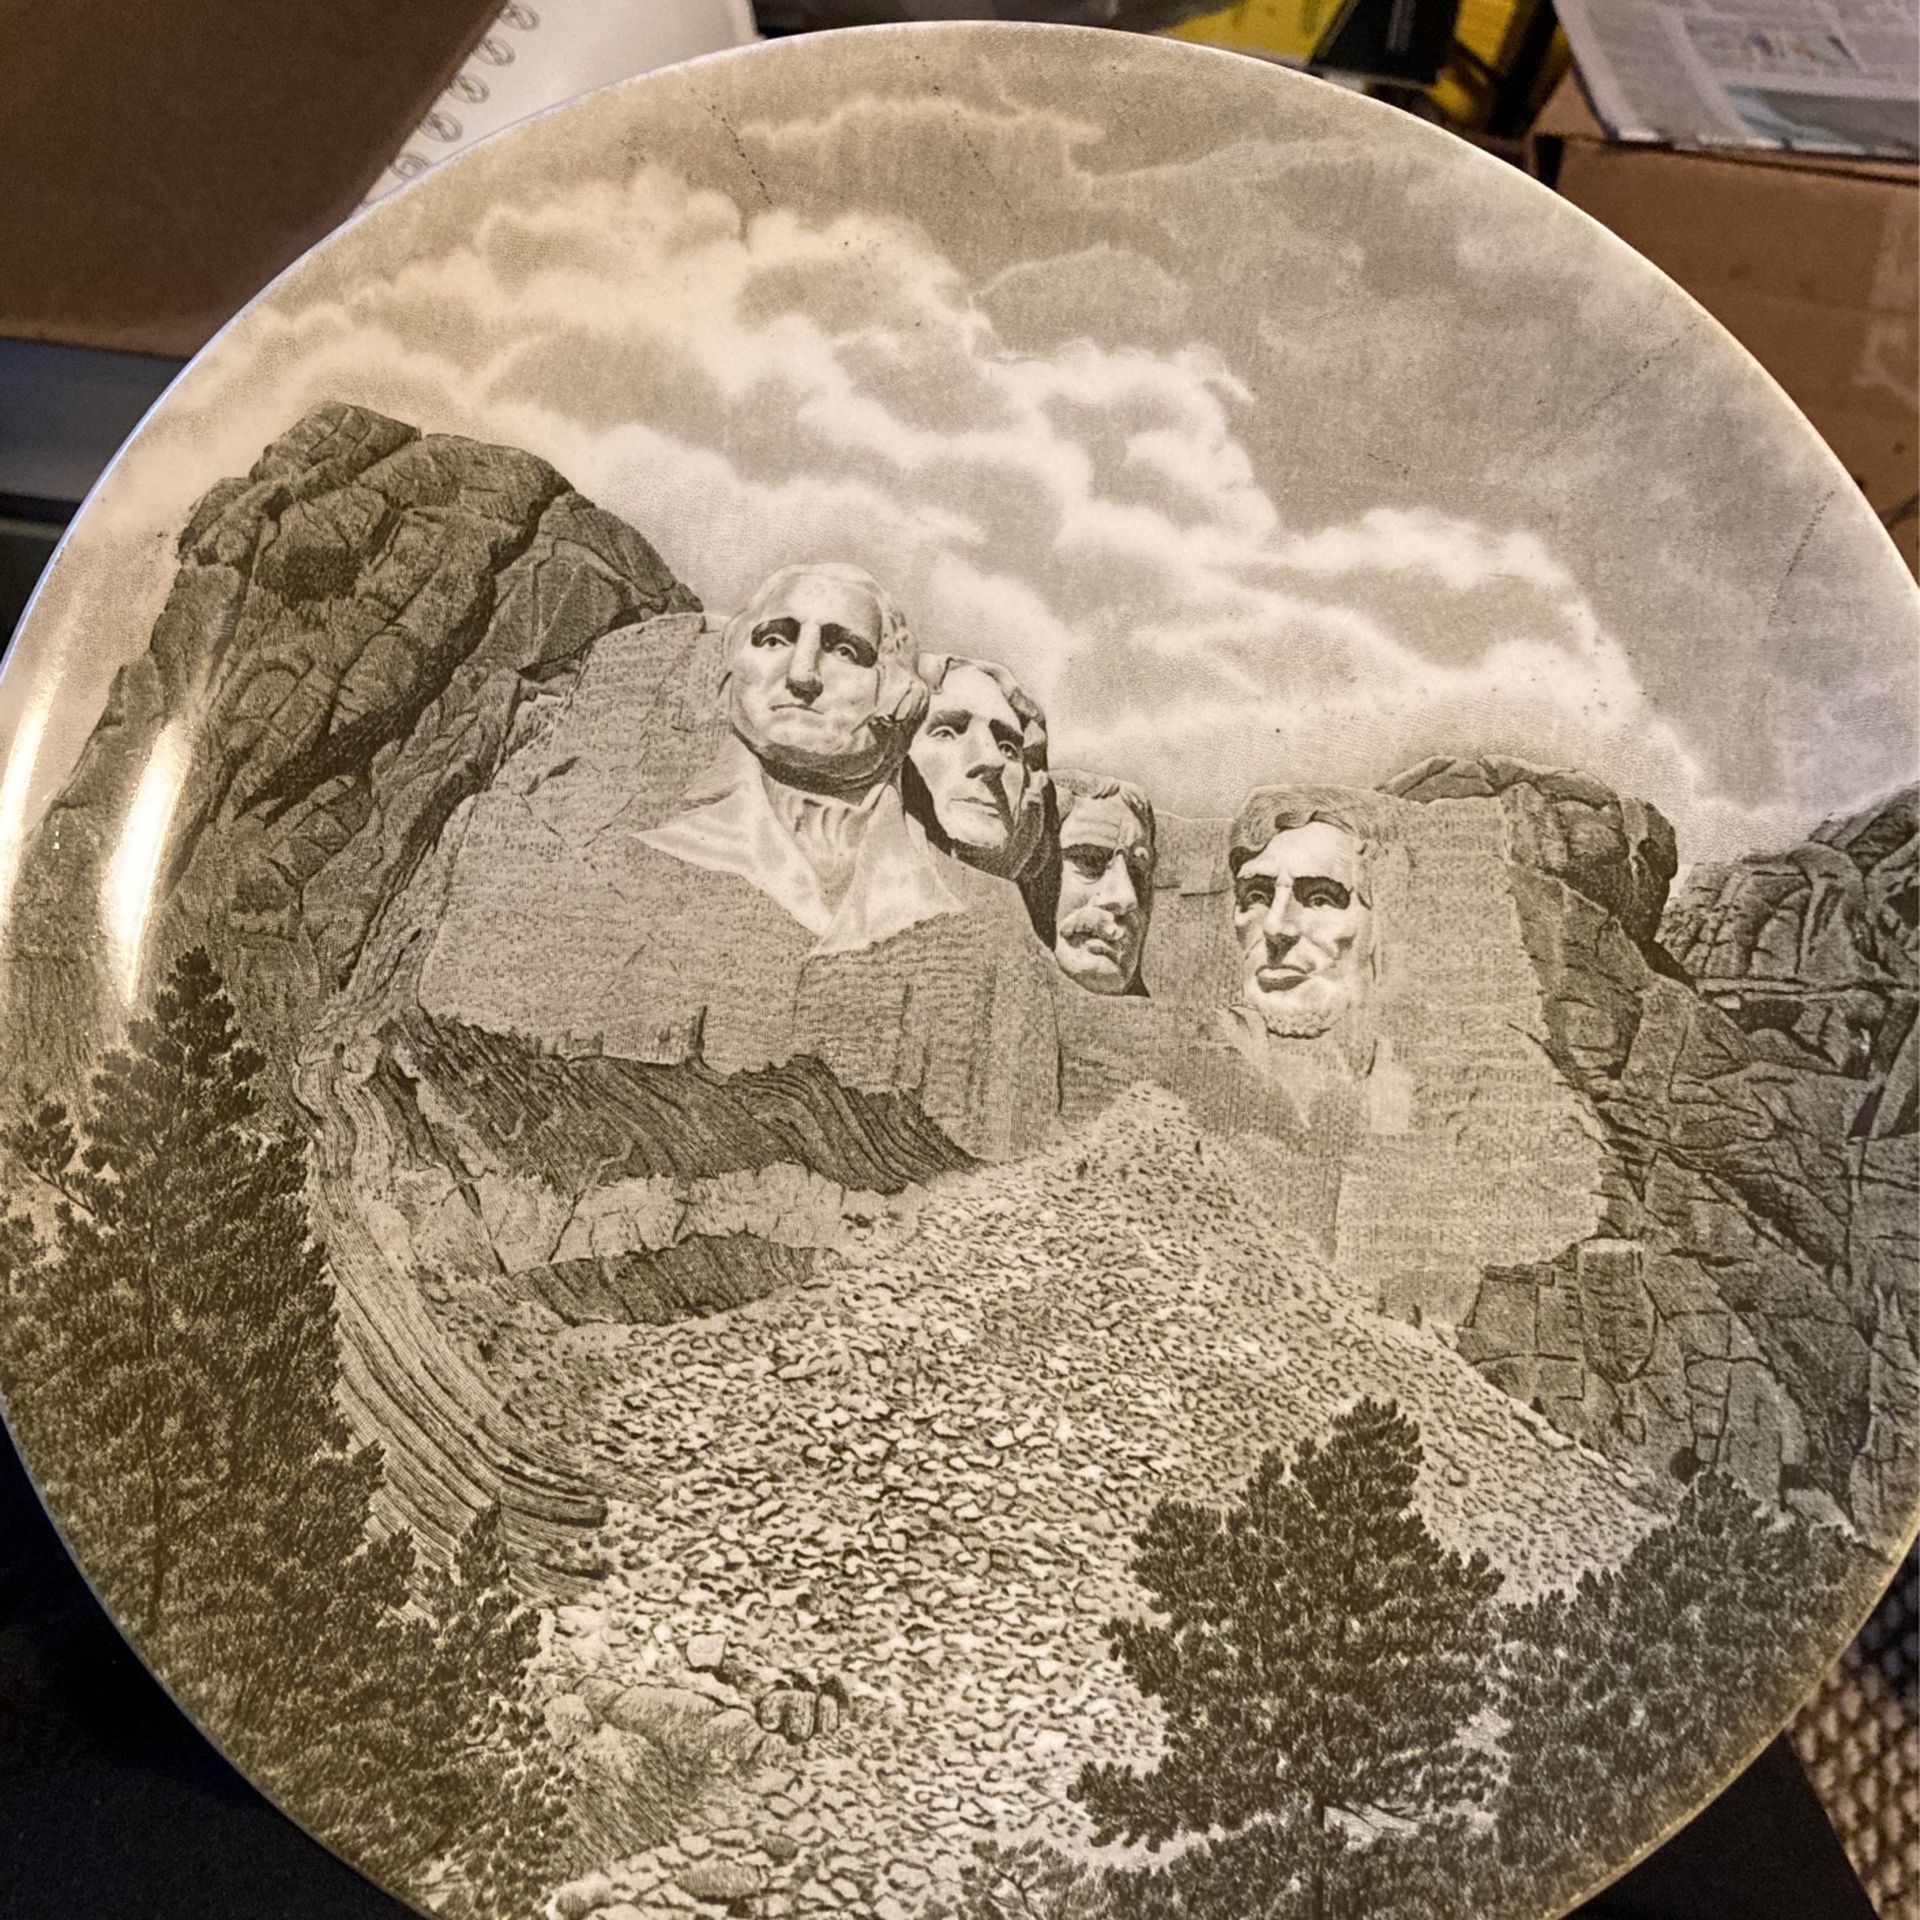 MT. Rushmore national Memorial Plate